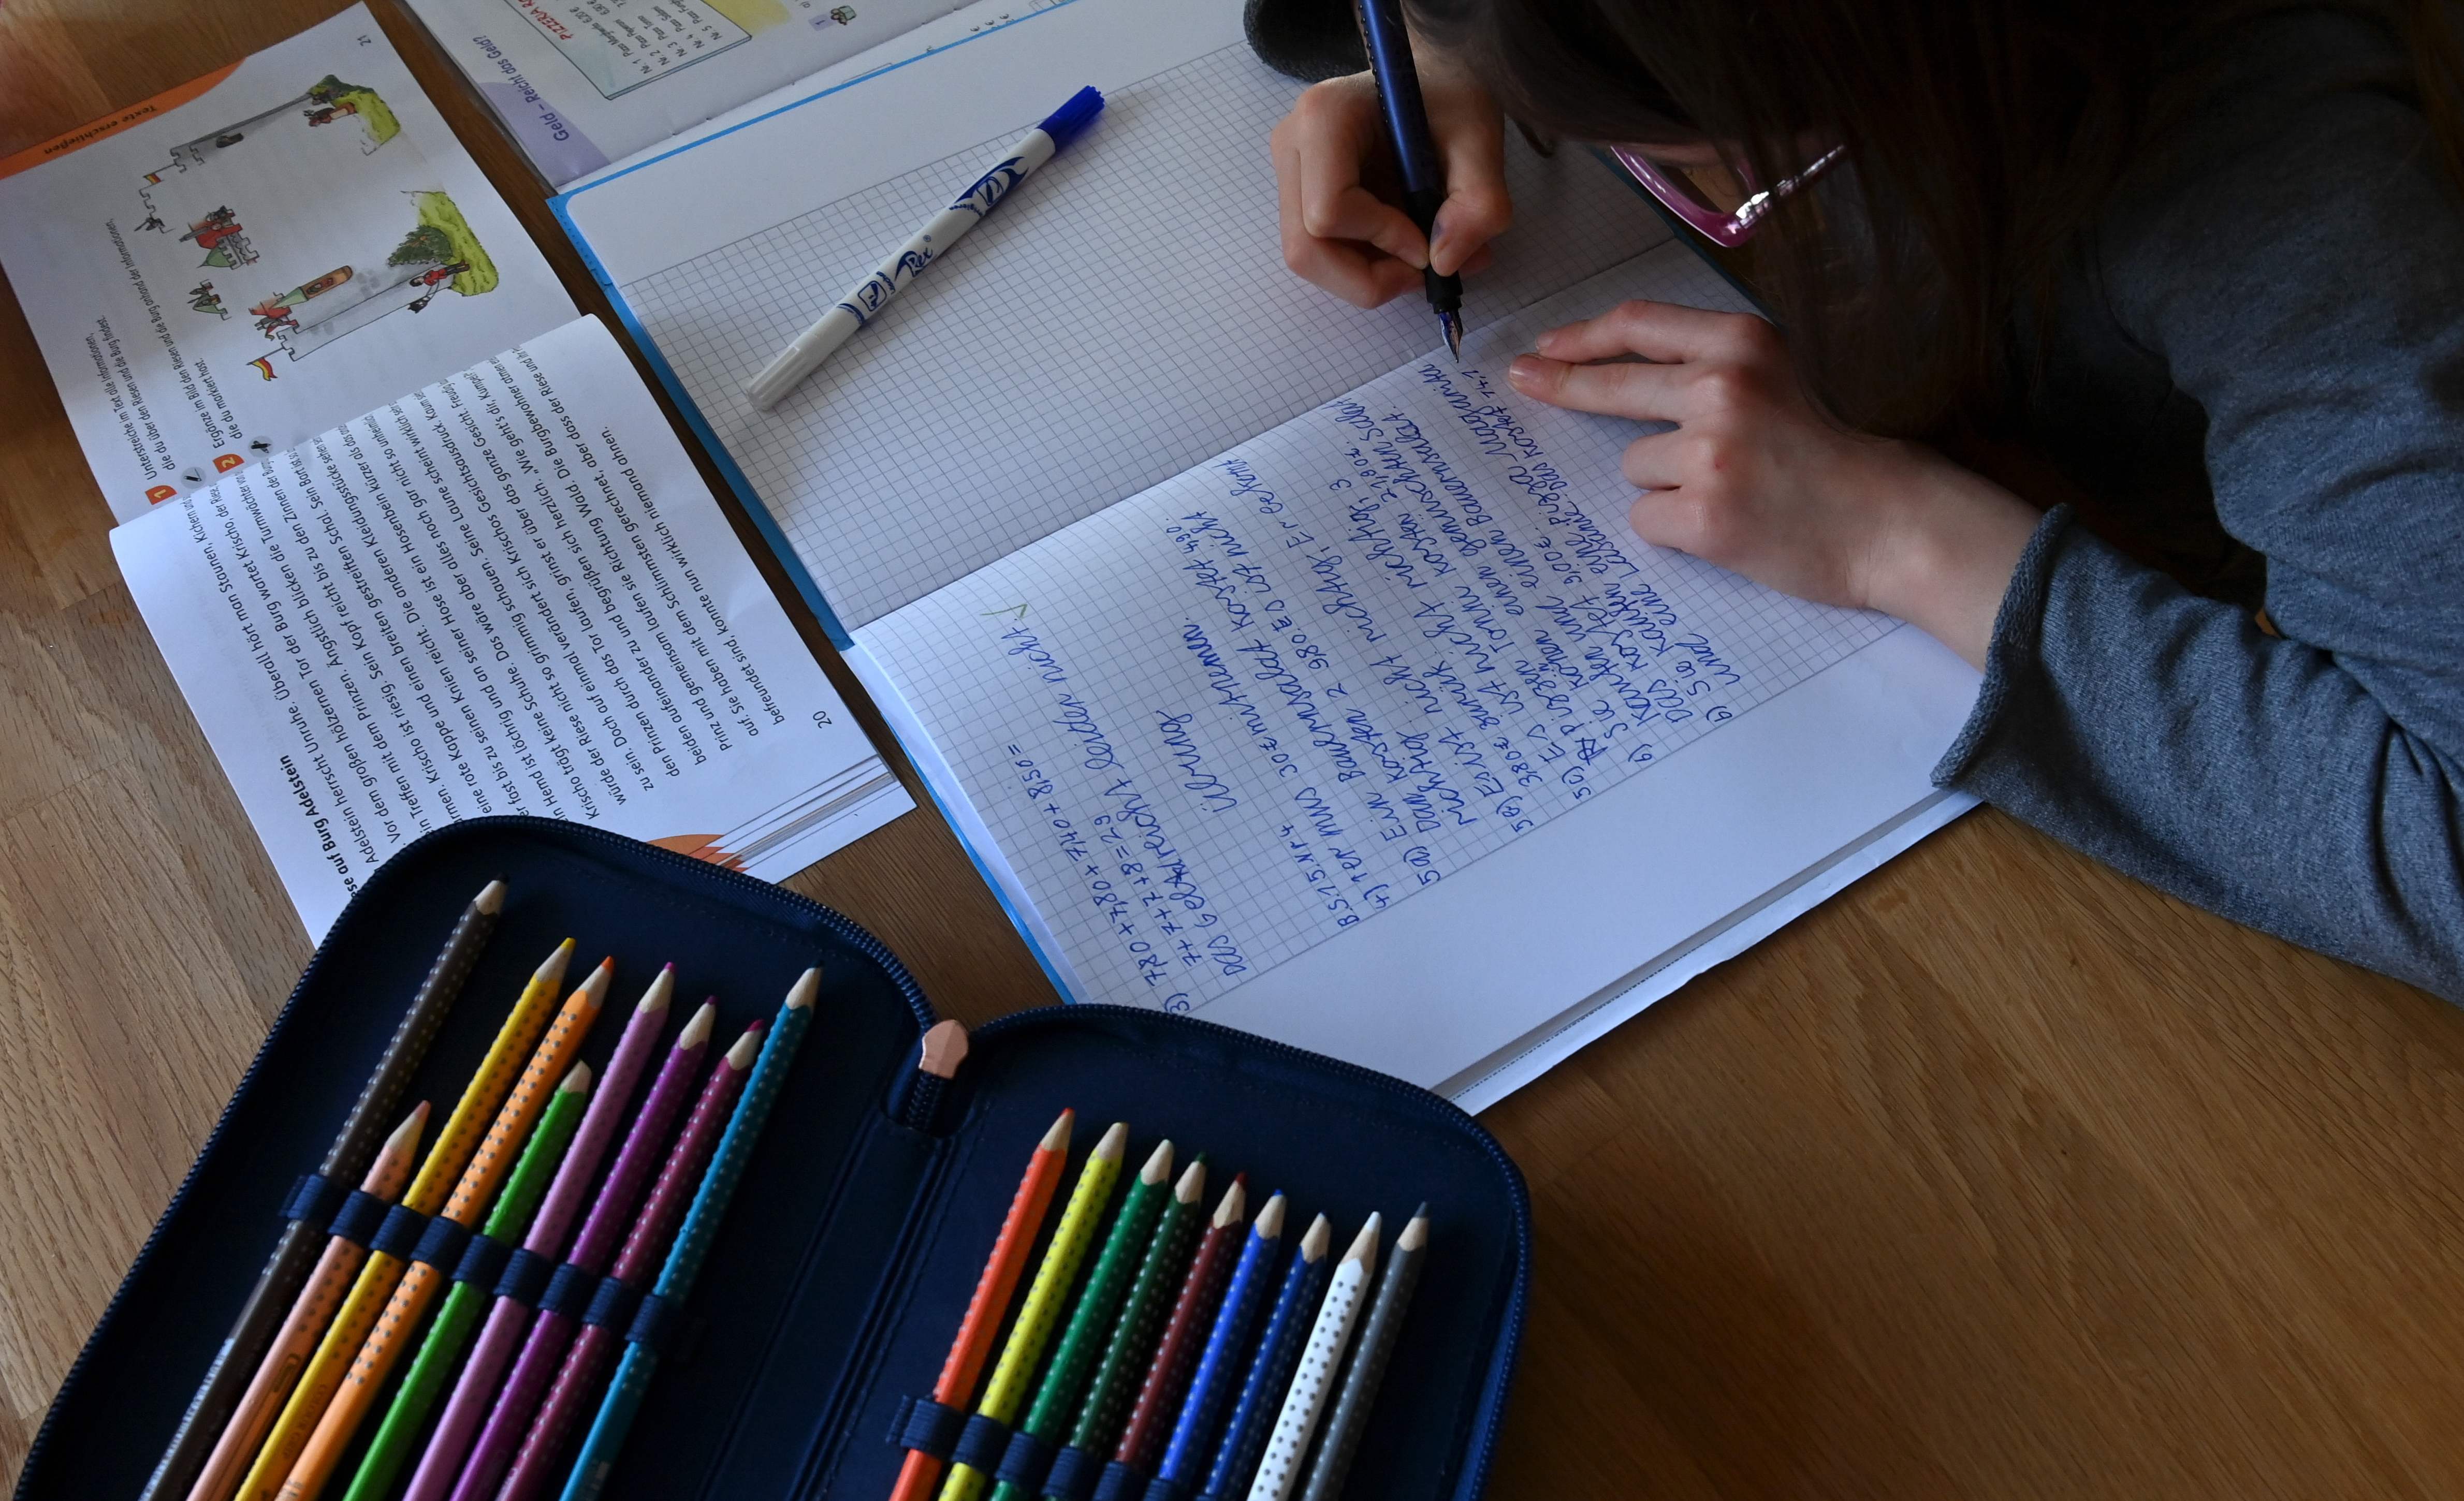 1月21日,一名学生在德国艾歇瑙的家中做作业